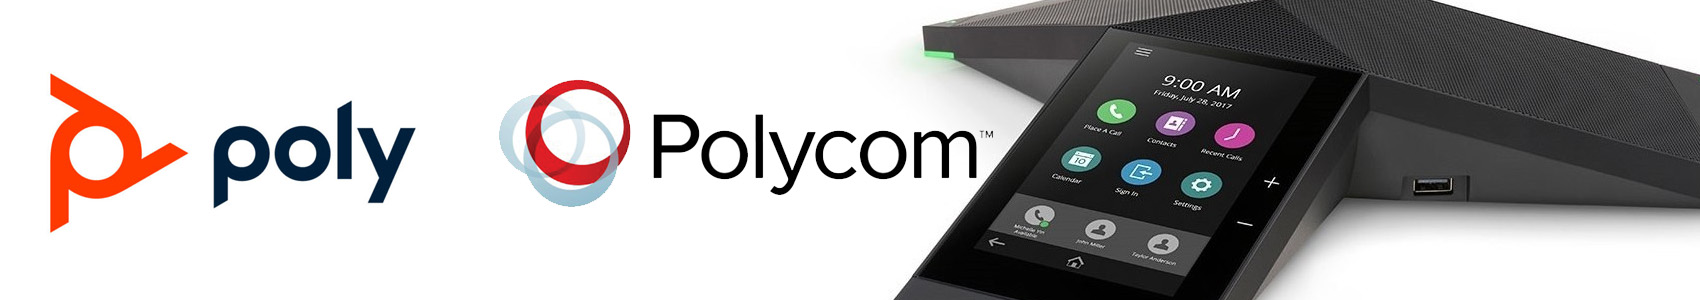 audioconférence Polycom/poly